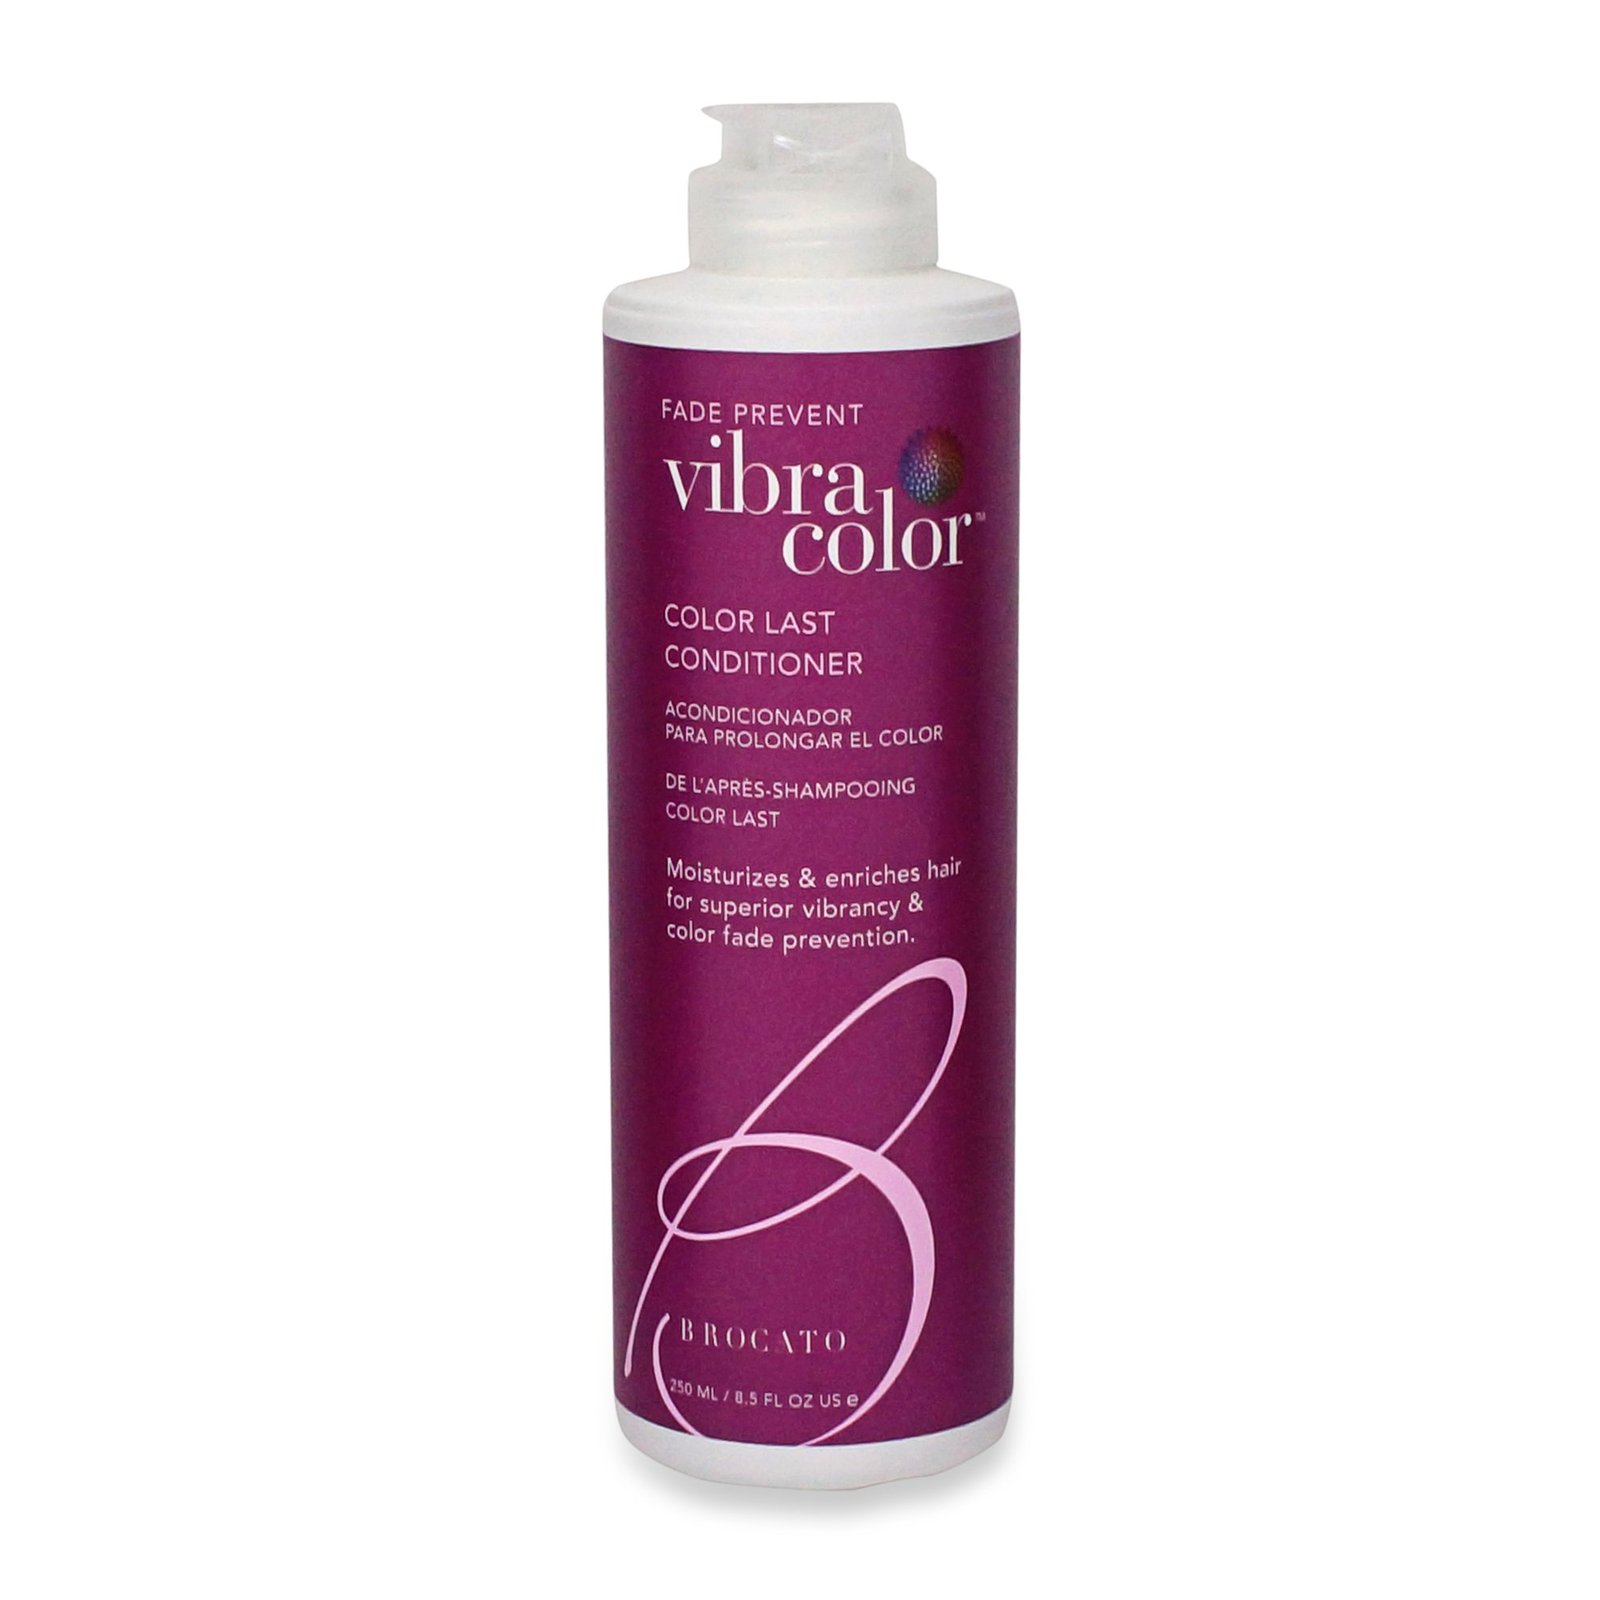 Brocato Vibracolor Fade Prevent Conditioner 8.5oz - $30.20